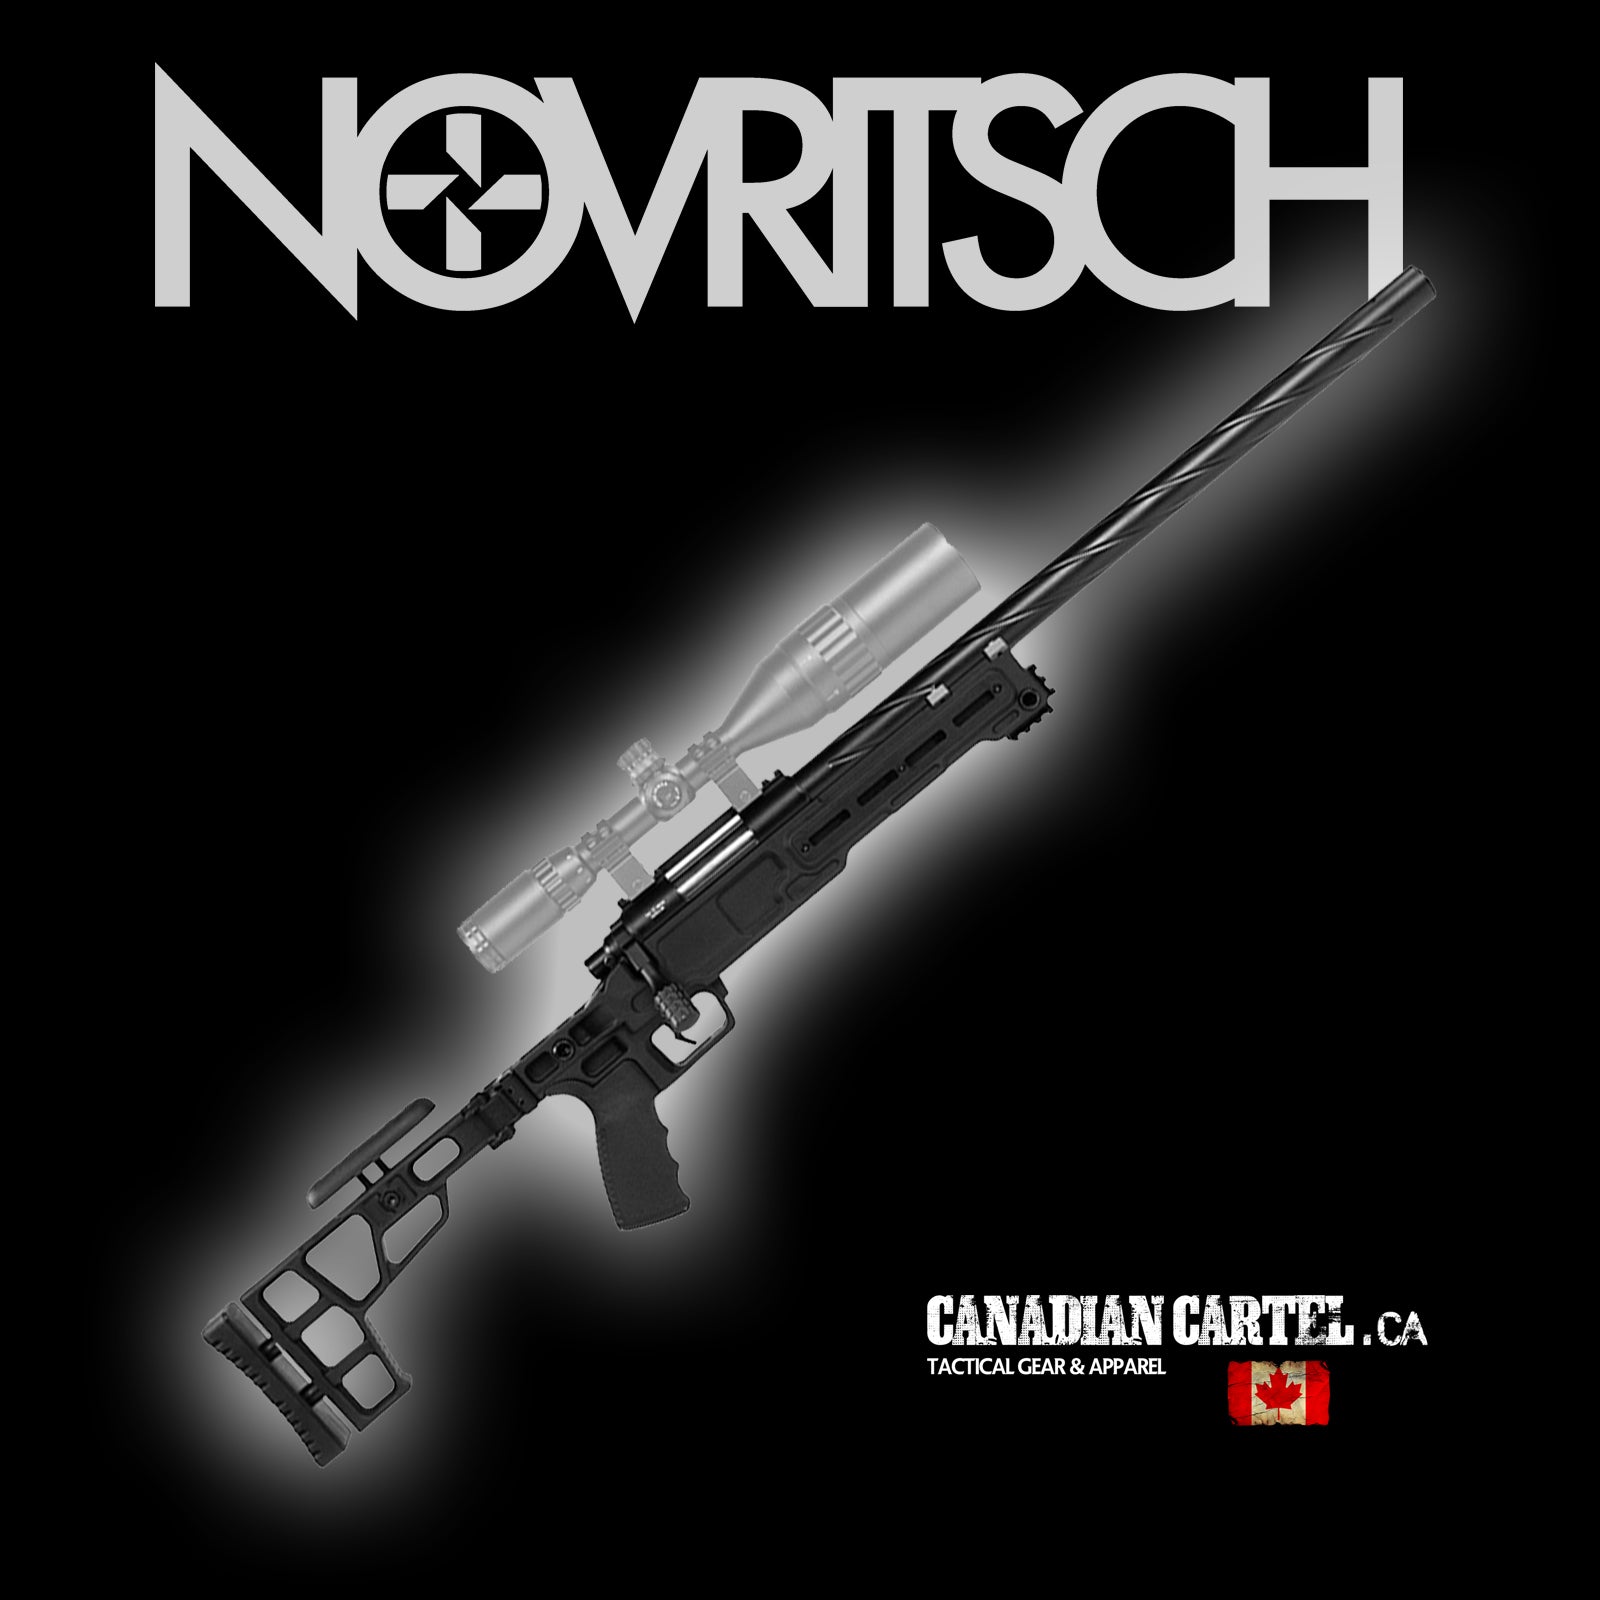 SSG10 A1 Airsoft Sniper Rifle - Novritsch